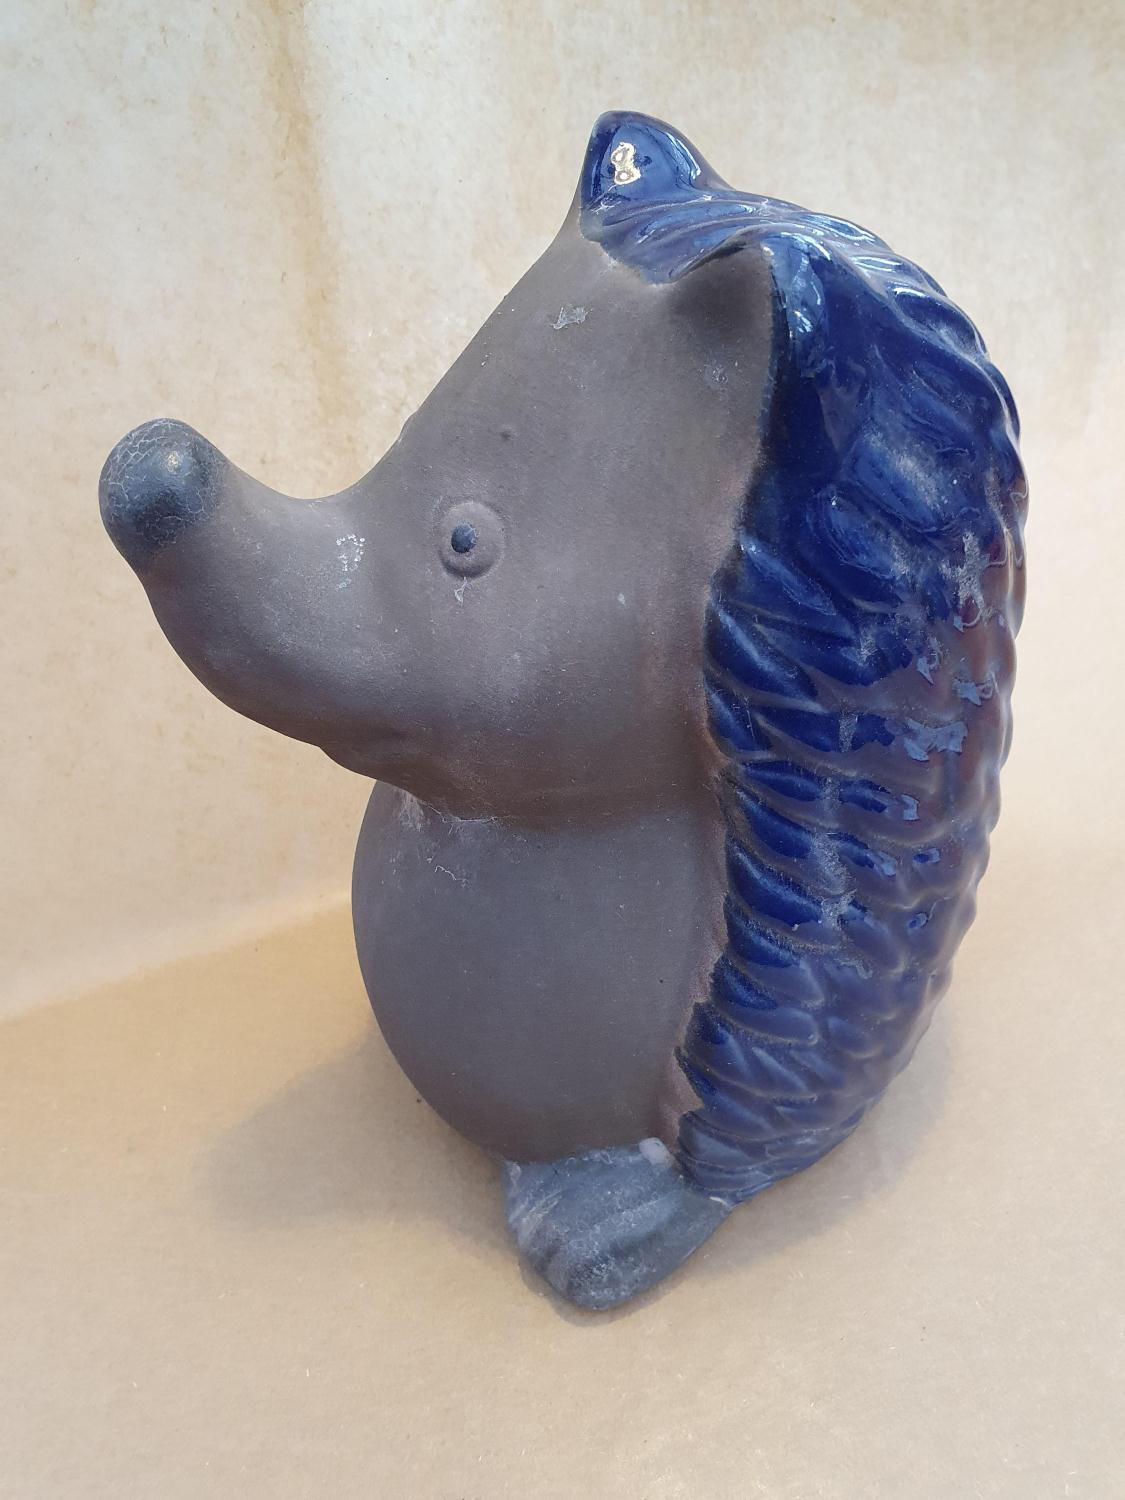 Piggsvin keramikk blå